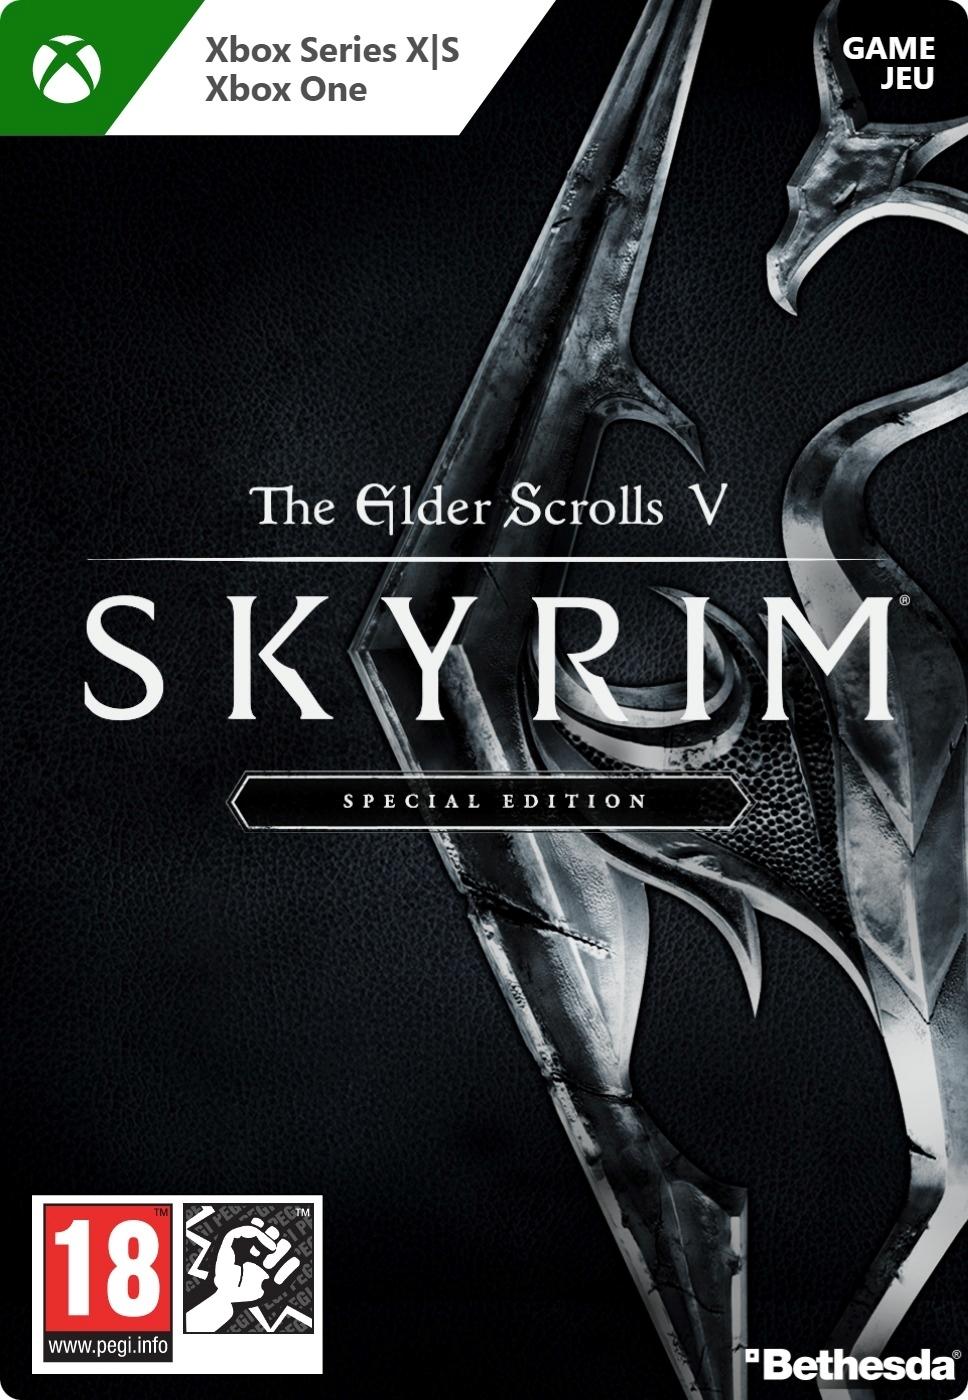 Skyrim: Special Edition - Xbox Series X/Xbox One - Game | G7Q-00149 (e27b0f50-8e74-e54b-97e0-dd1ec7cb6a92)